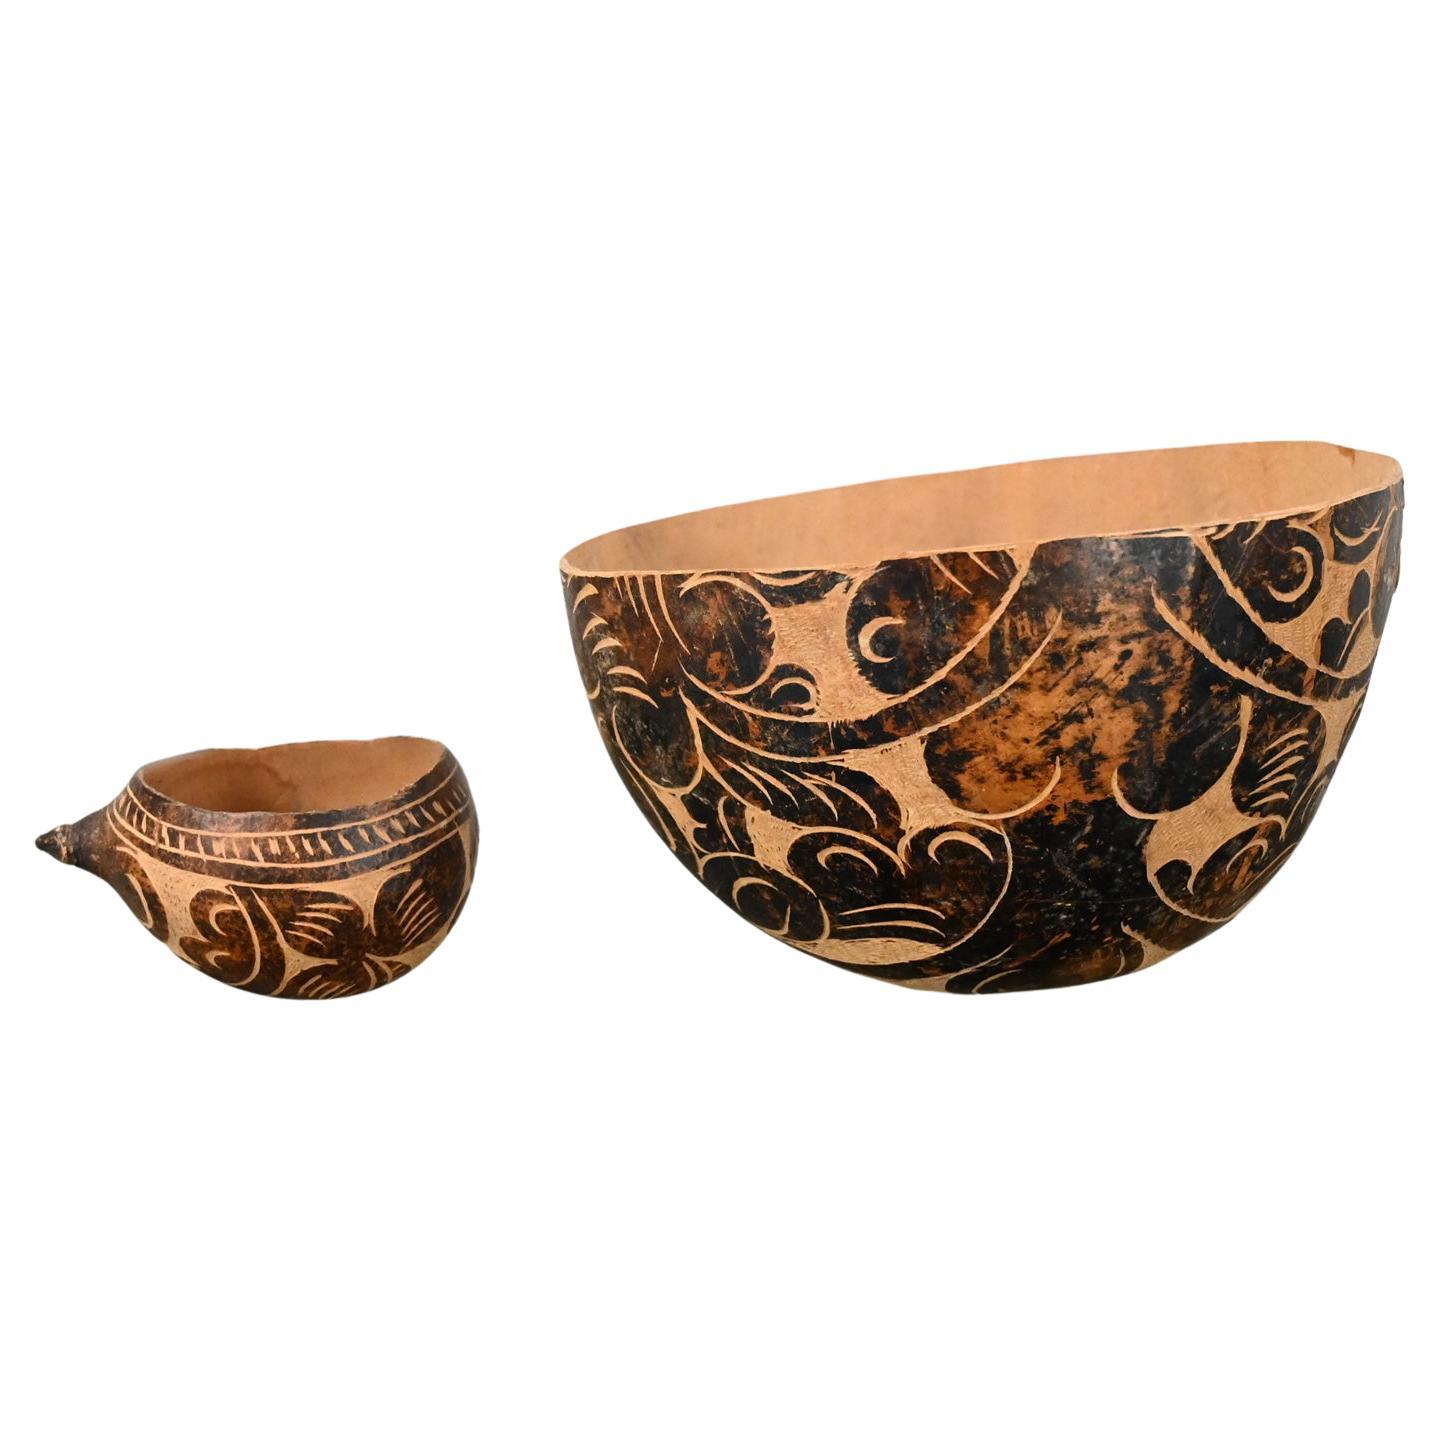 Milieu - Fin du 20e siècle Amérique du Sud Tribal Gourd Bowls Hand Carved Floral 